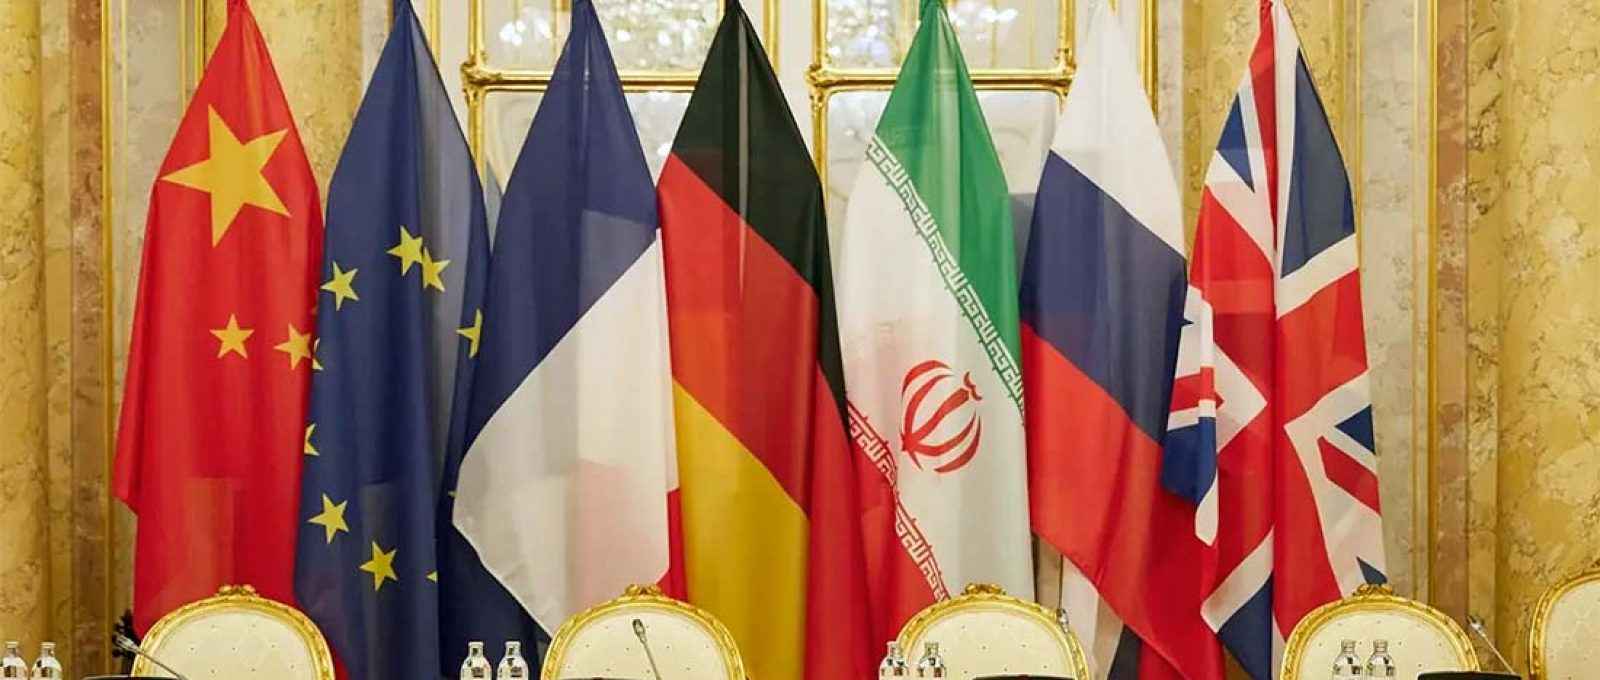 Bandeiras dos países participantes das negociações para reviver o acordo nuclear com o Irã em Viena (Reuters).